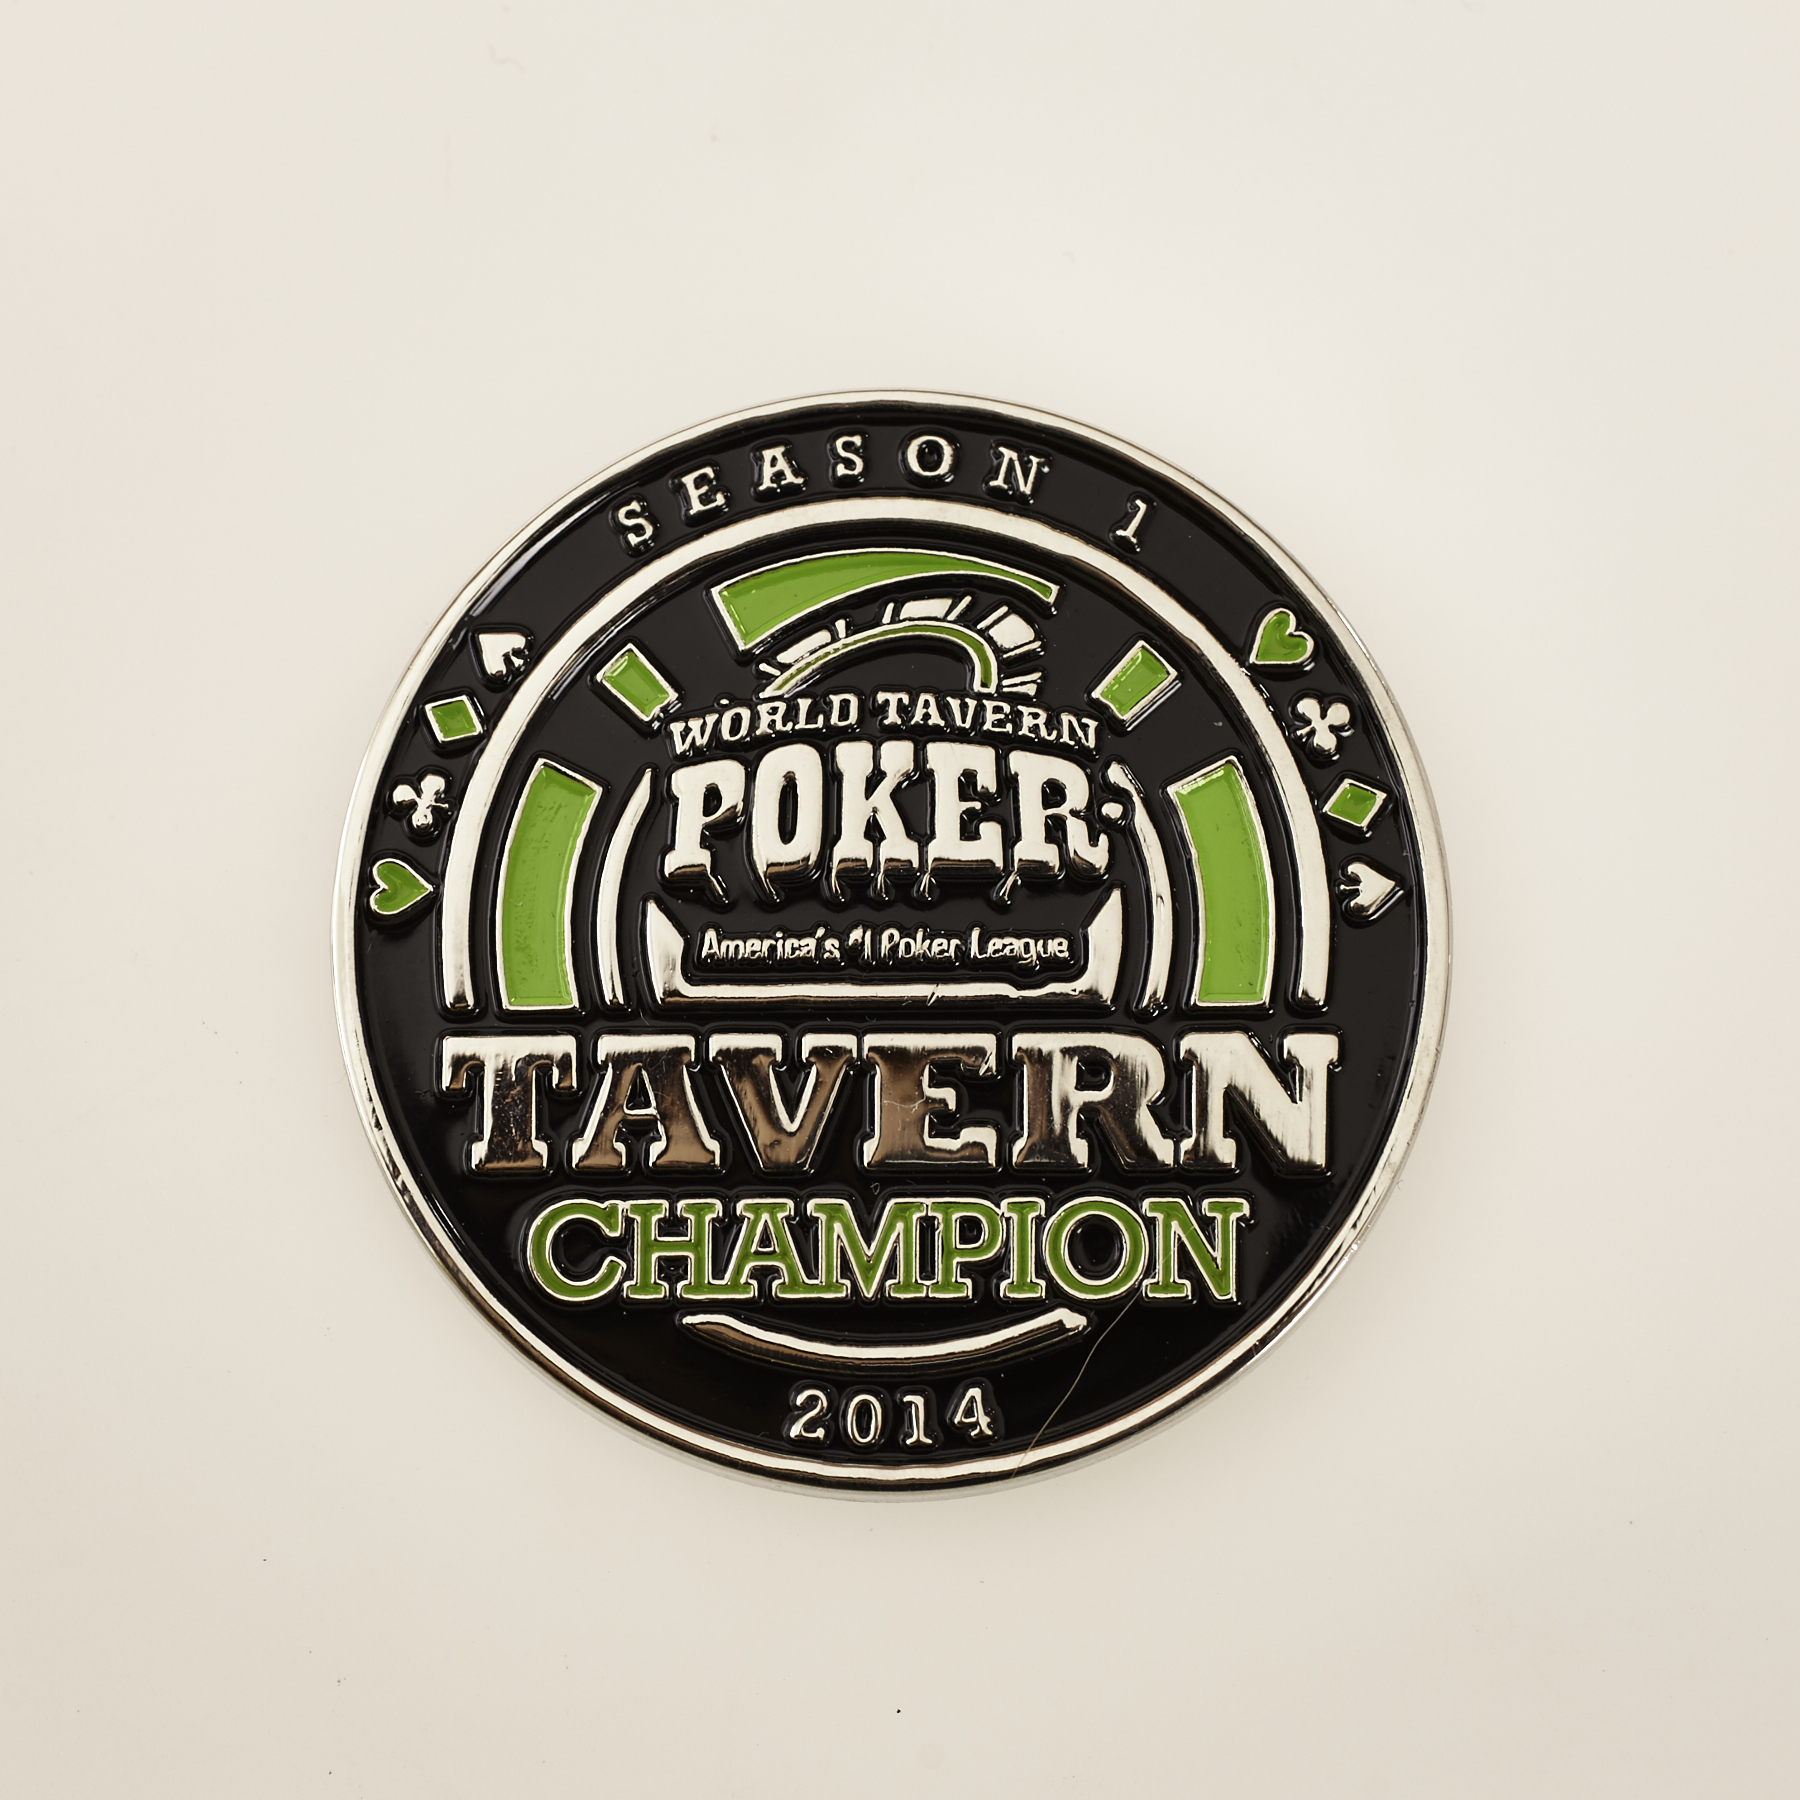 WORLD TAVERN POKER, TAVERN CHAMPION, SEASON 1 2014, Poker Card Guard